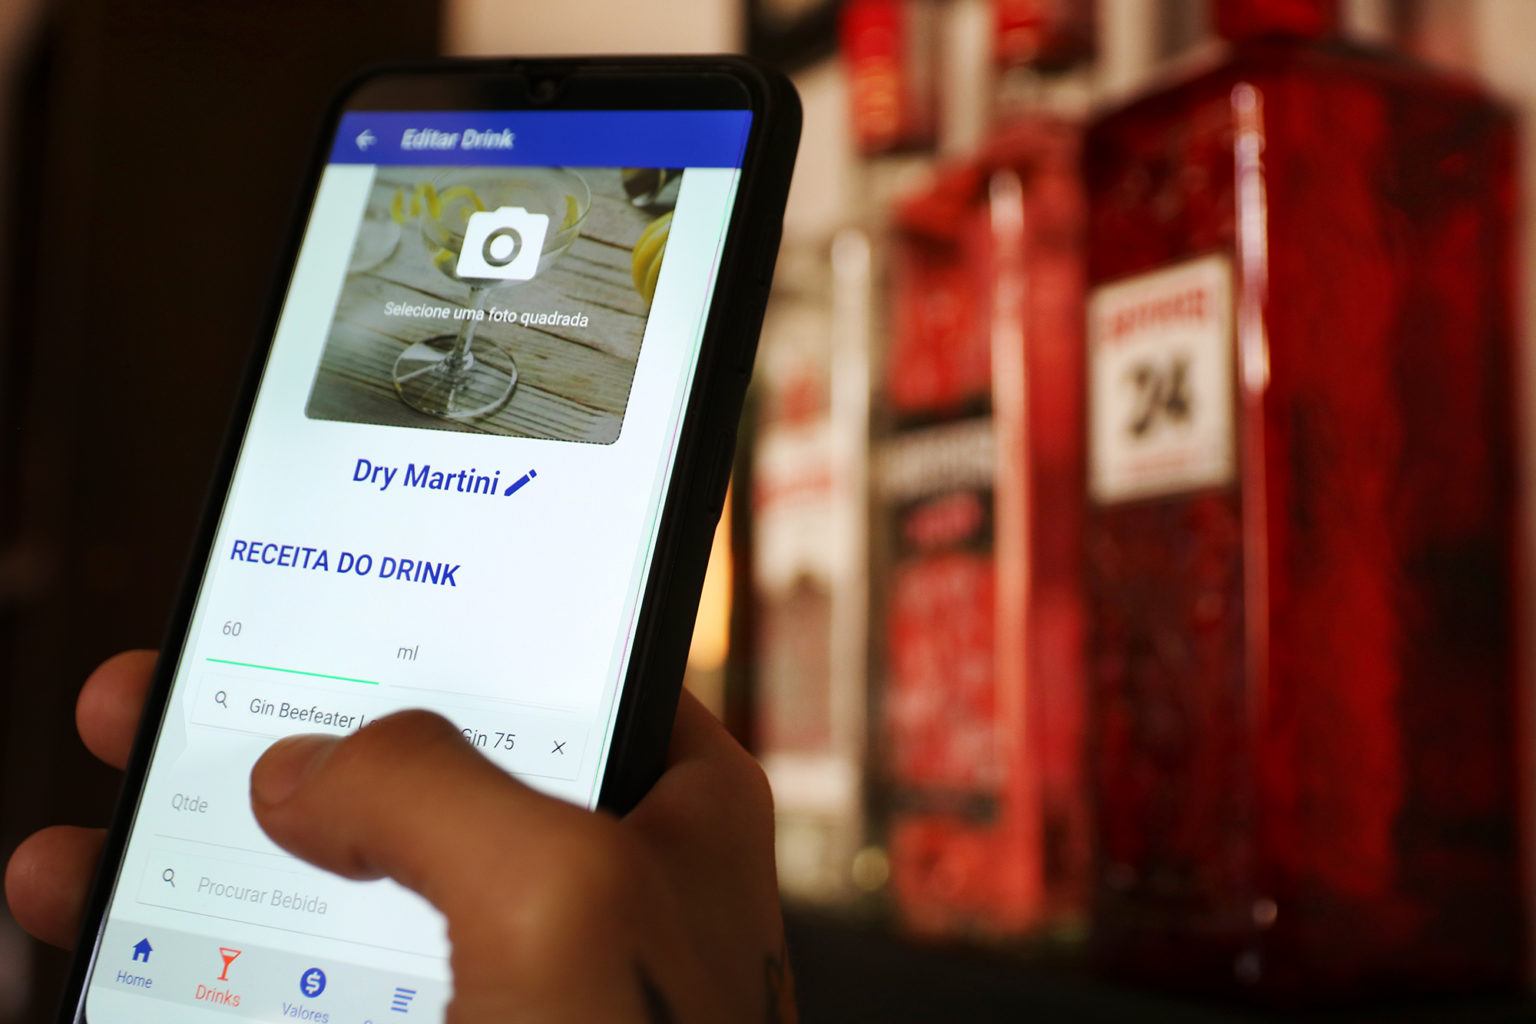 aplicativo drink2do na tela do smartphone